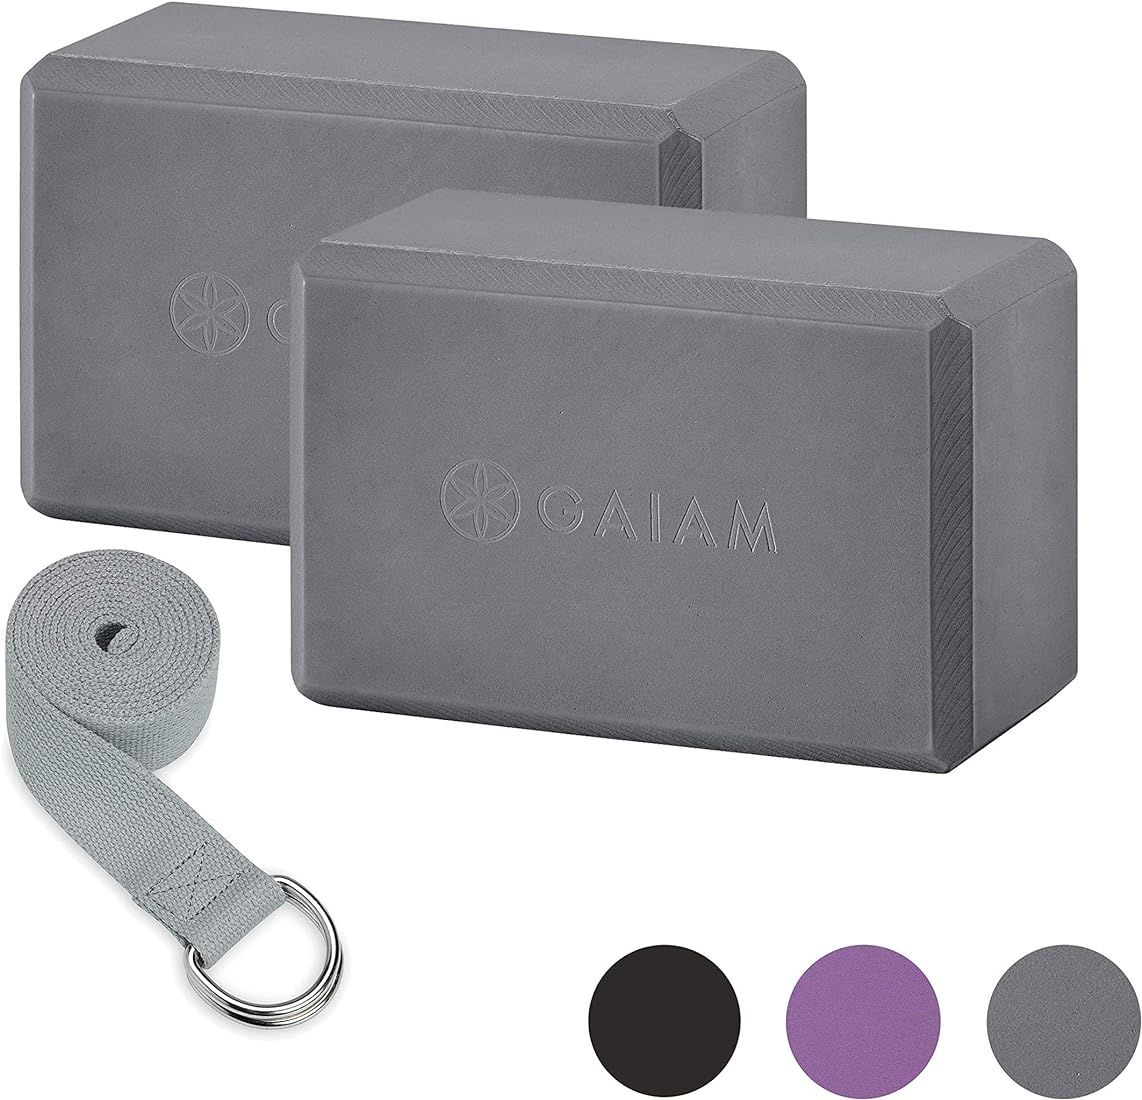 Gaiam Essentials Yoga Block 2 Pack & Yoga Strap Set, Grey | Amazon (US)